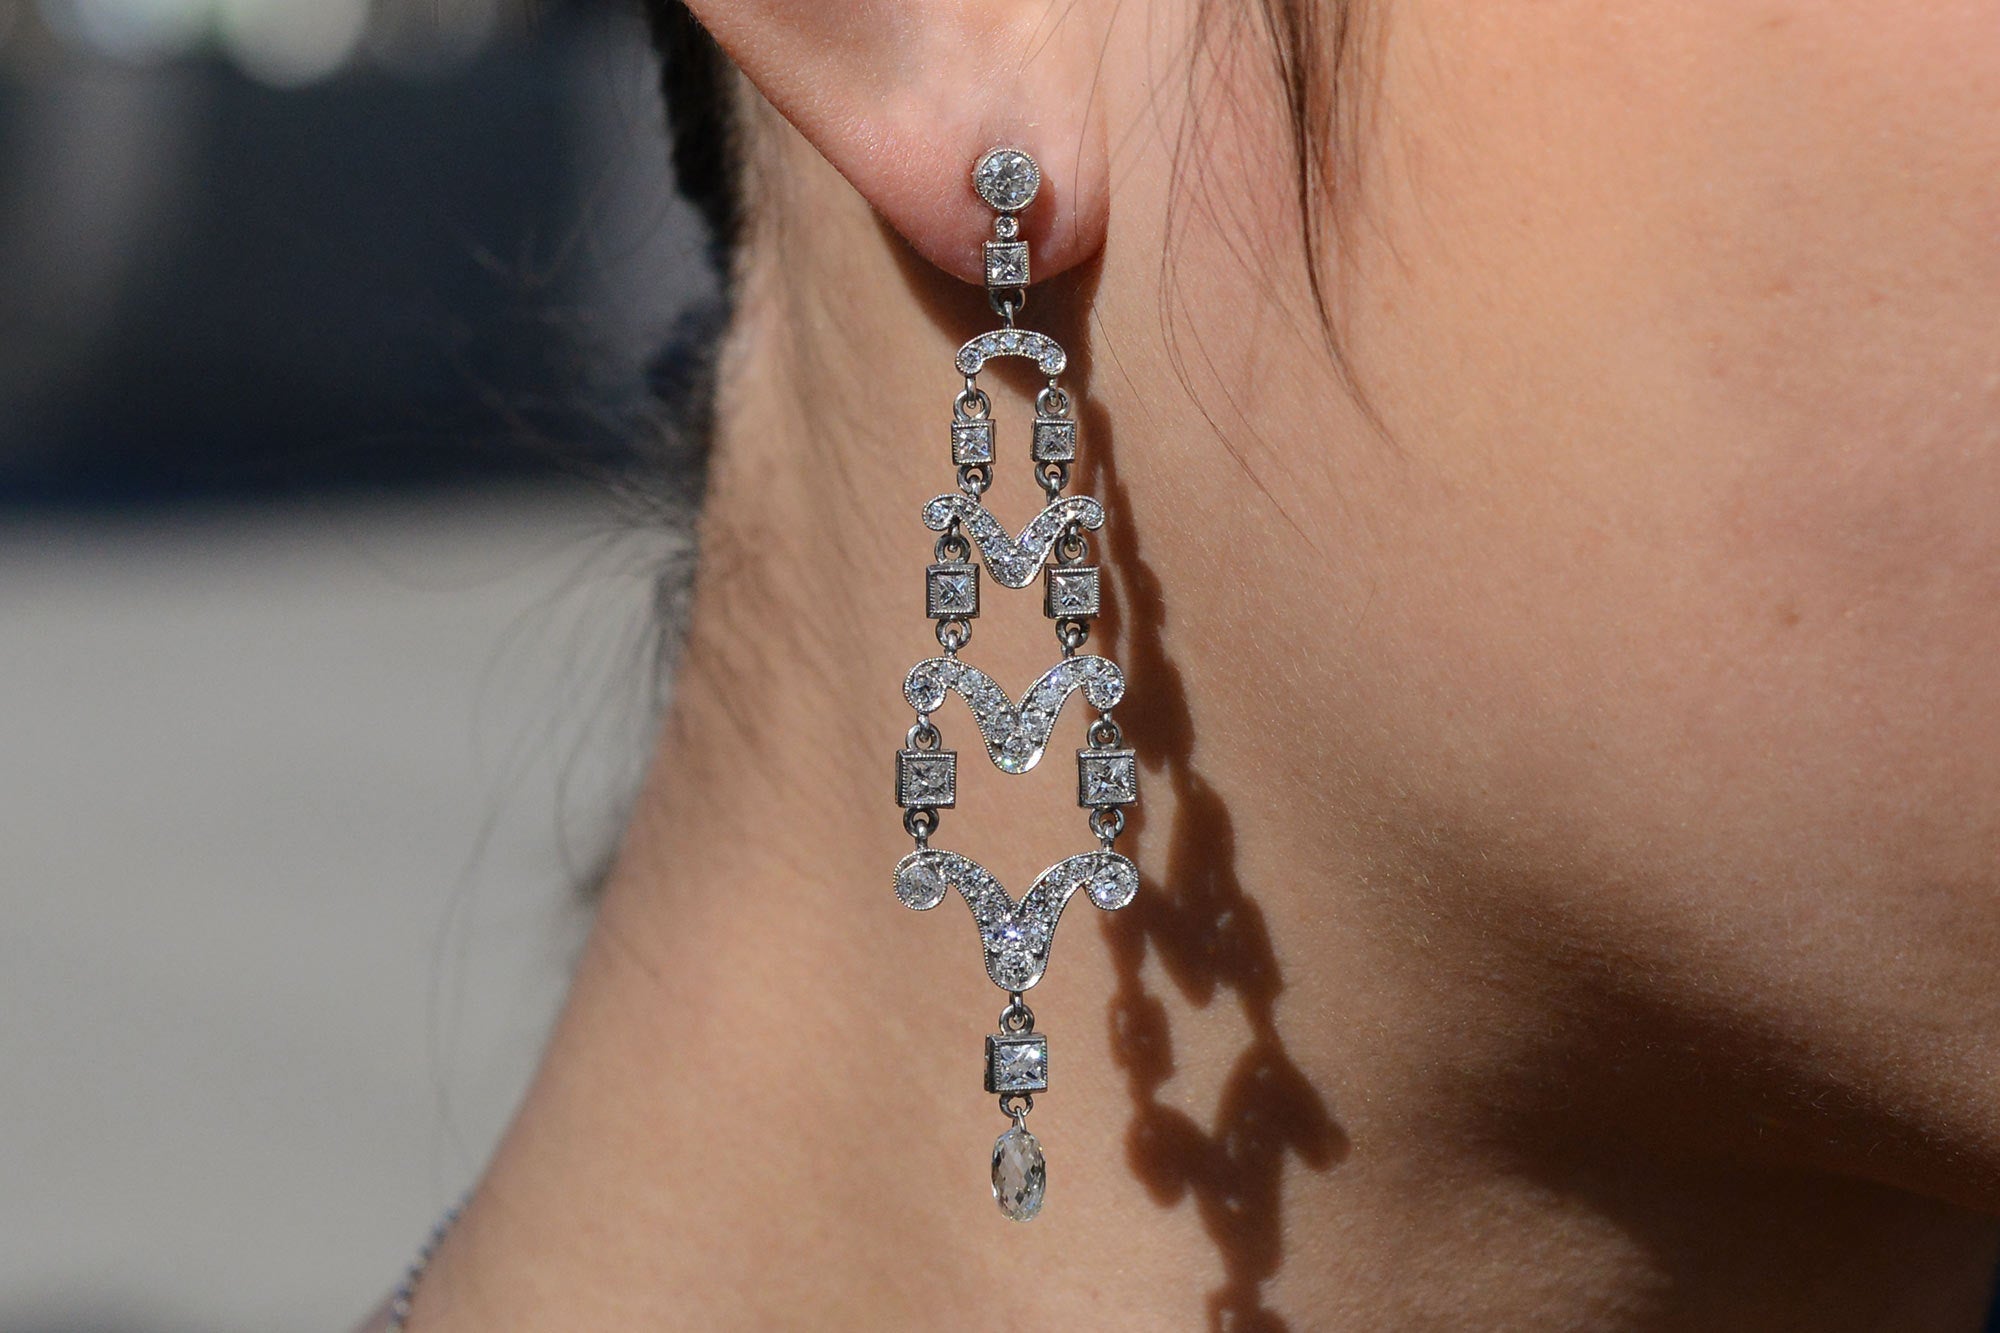 Art Deco Style 4 Carat Diamond Chandelier Earrings